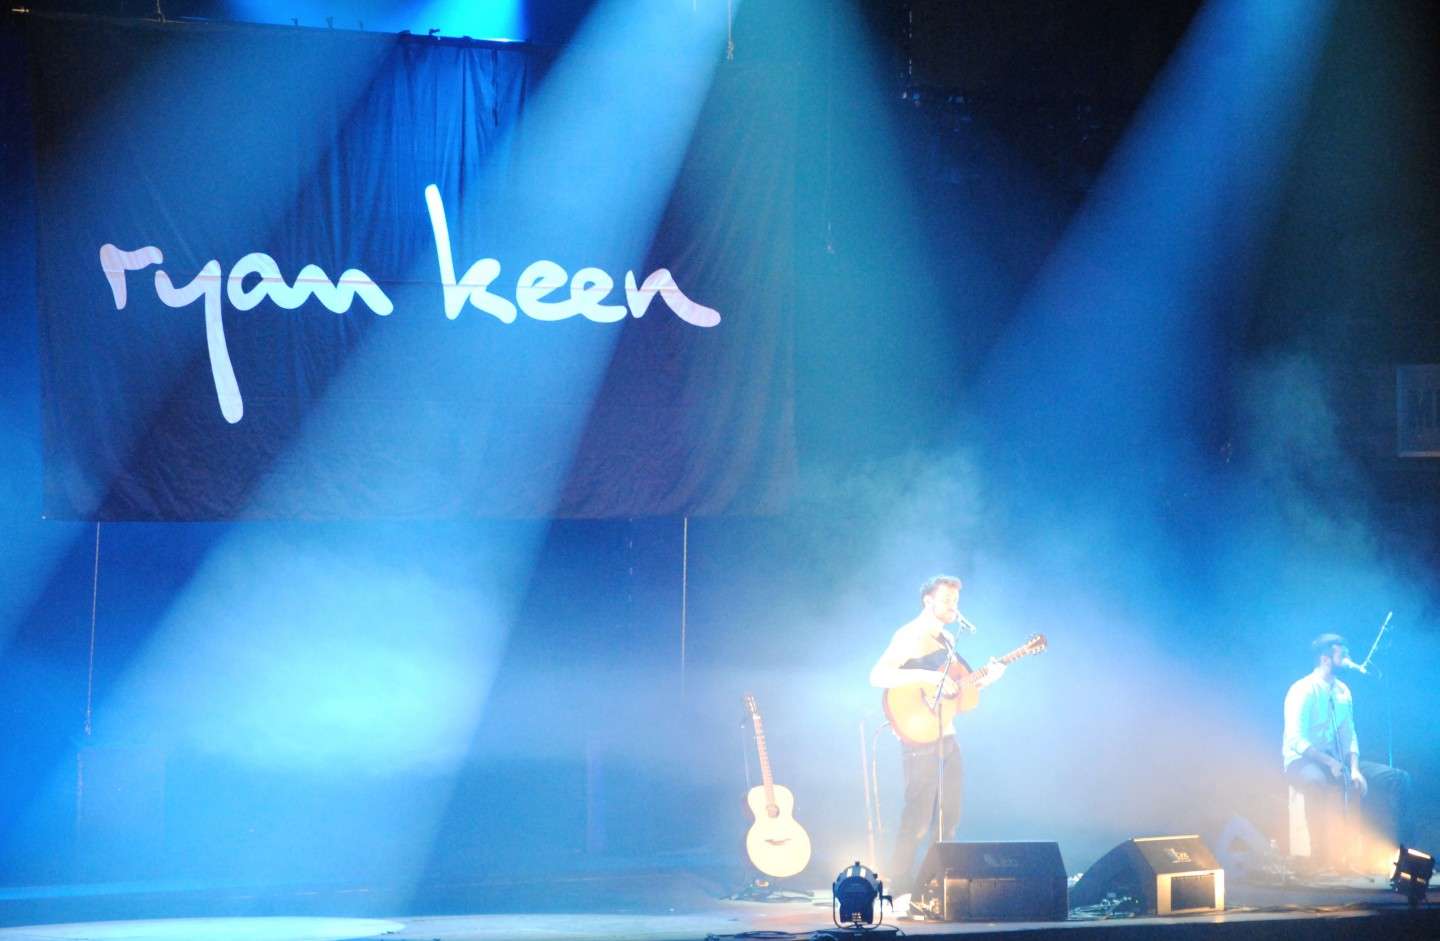 Ryan Keen a concerto di Ed Sheeran a Milano